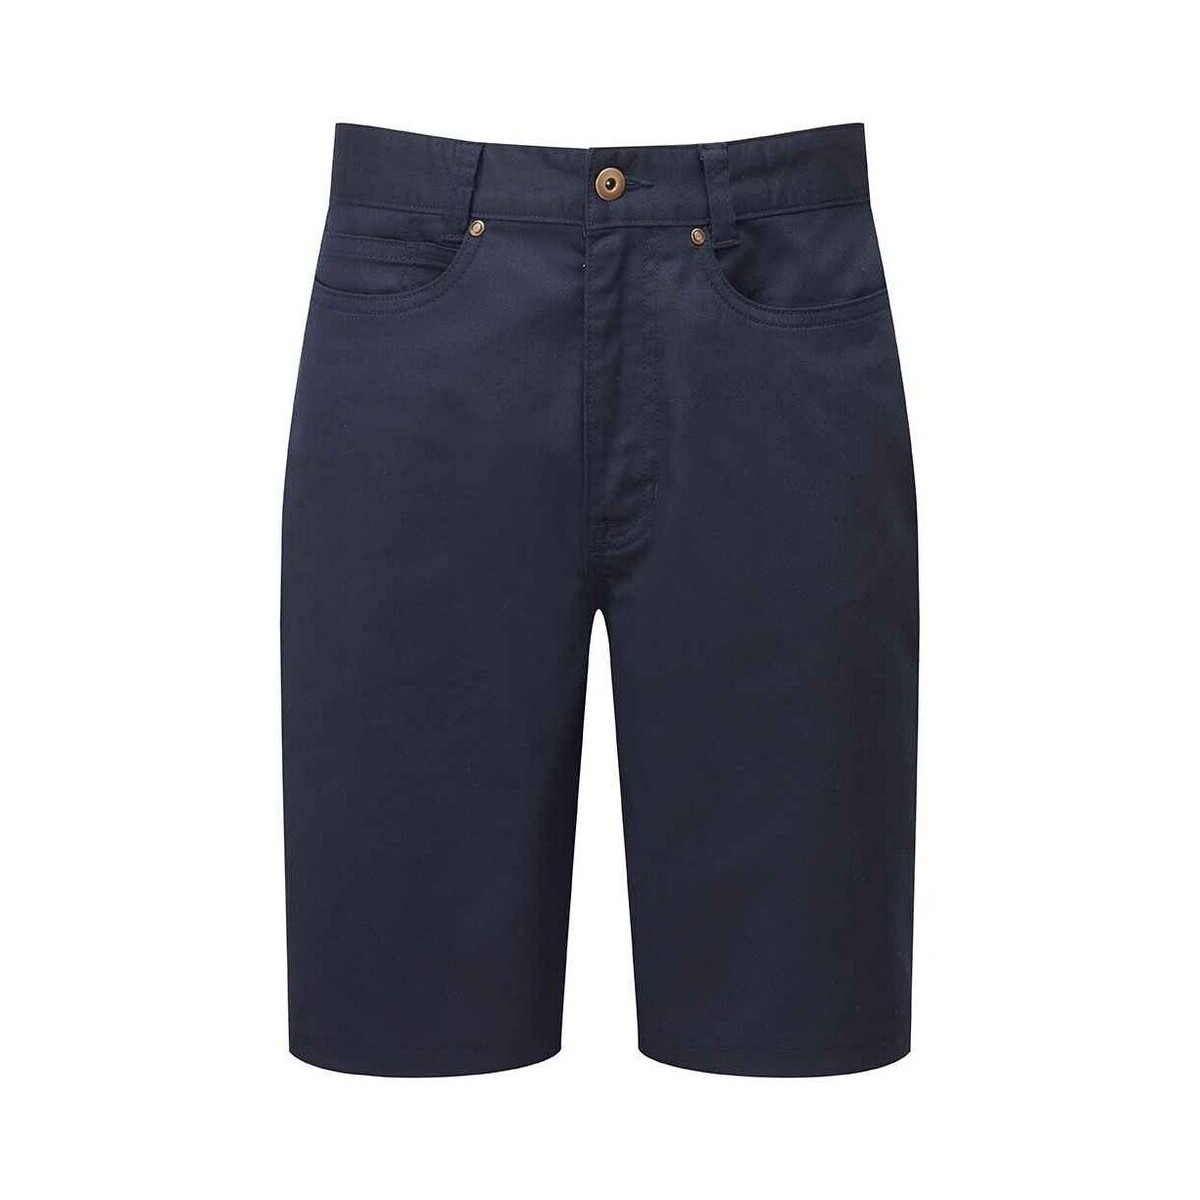 Vêtements Homme Shorts / Bermudas Premier PR562 Bleu